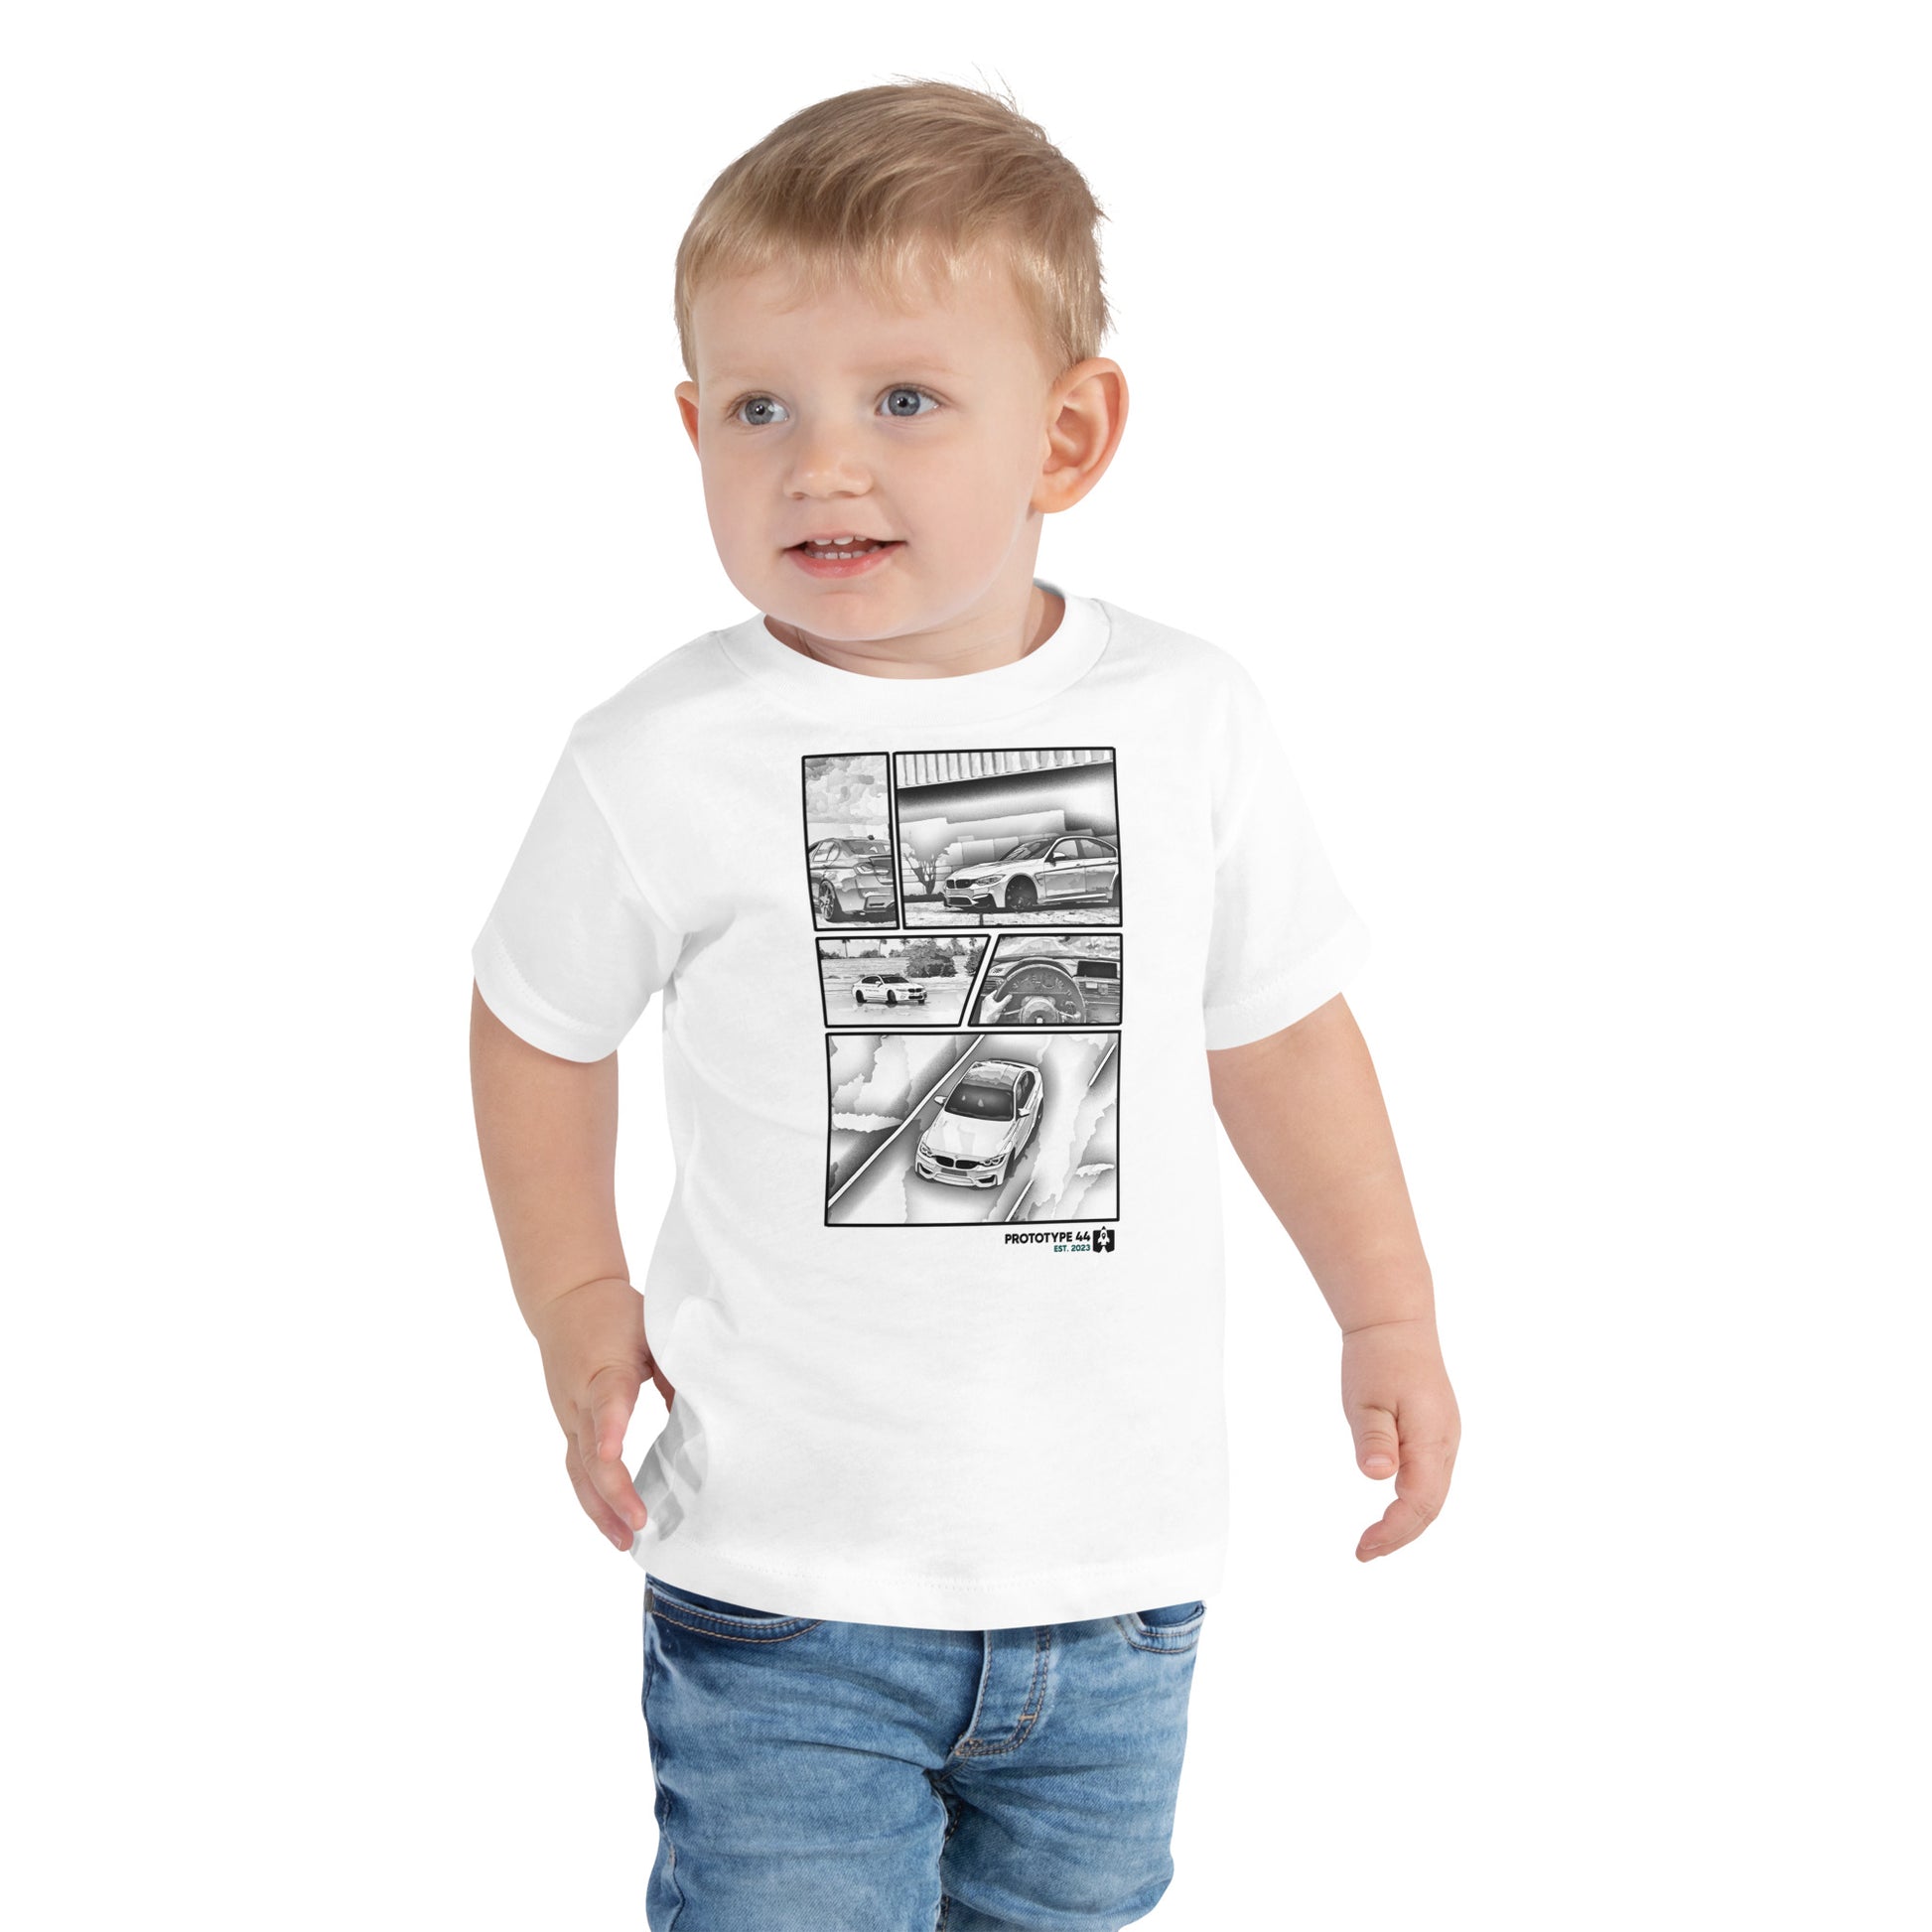 toddler boy wearing M3 shirt